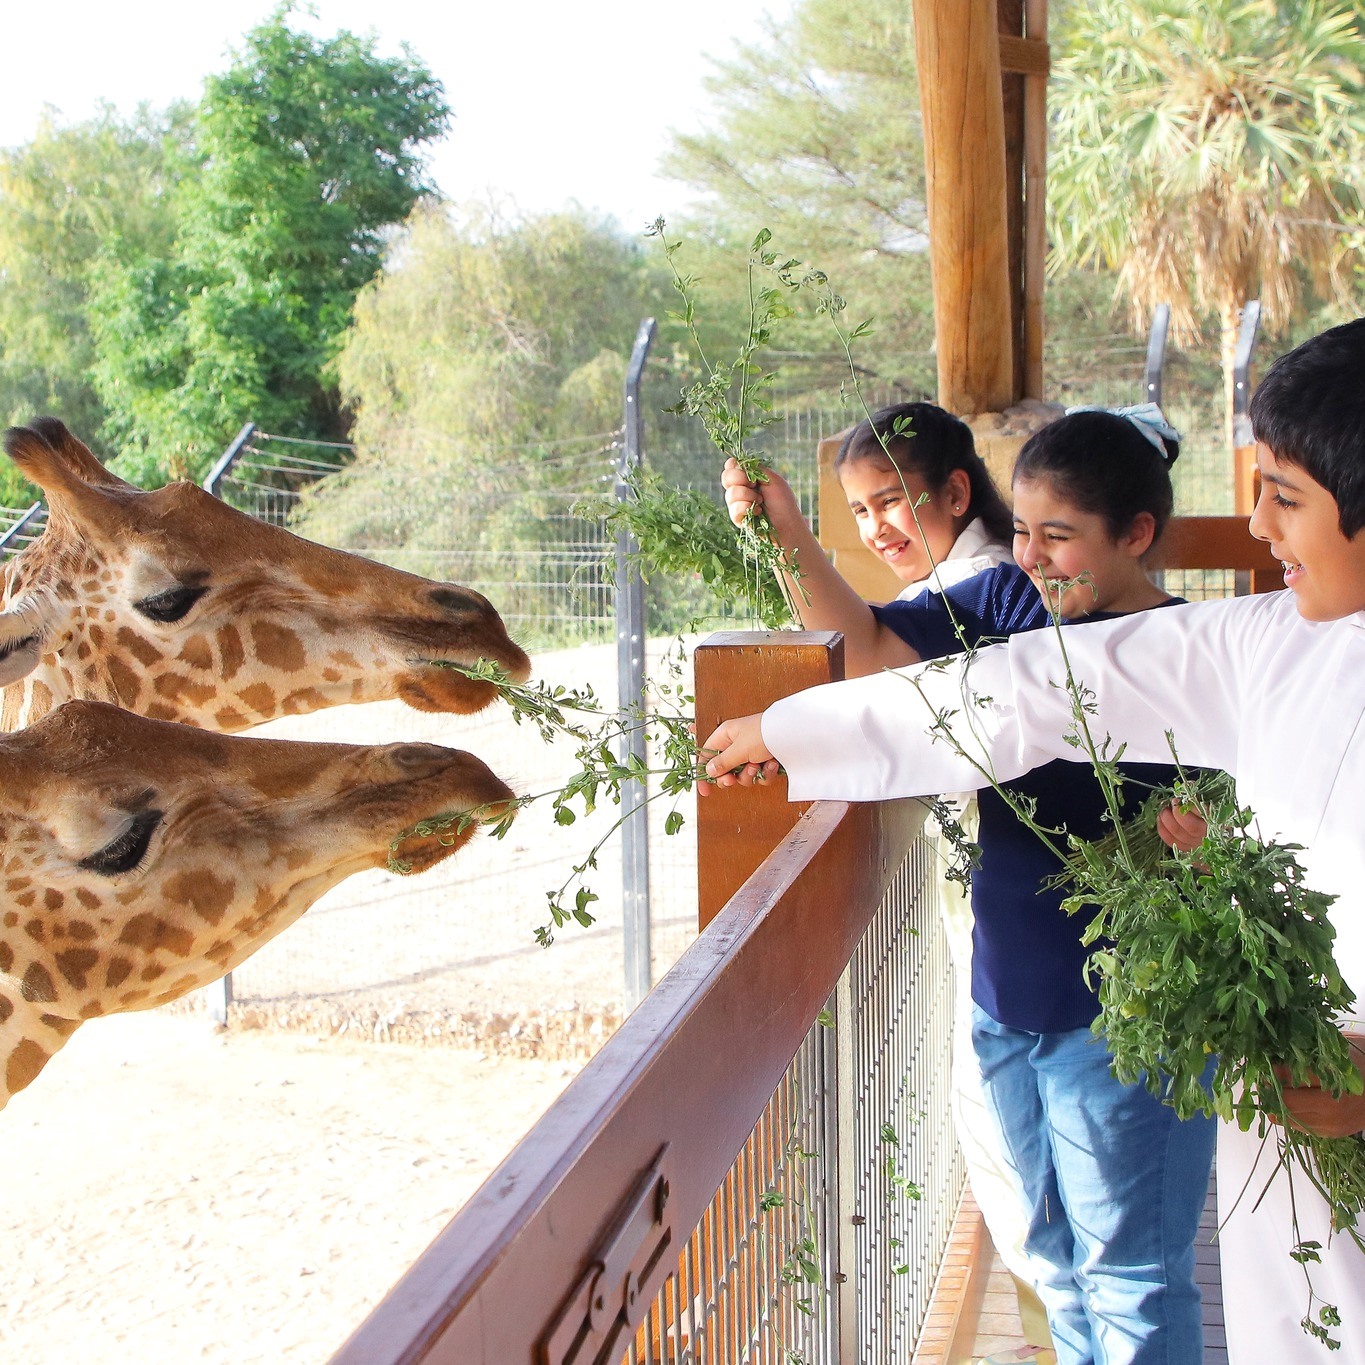 Al Ain Zoo (ENTERTAINER TICKET)